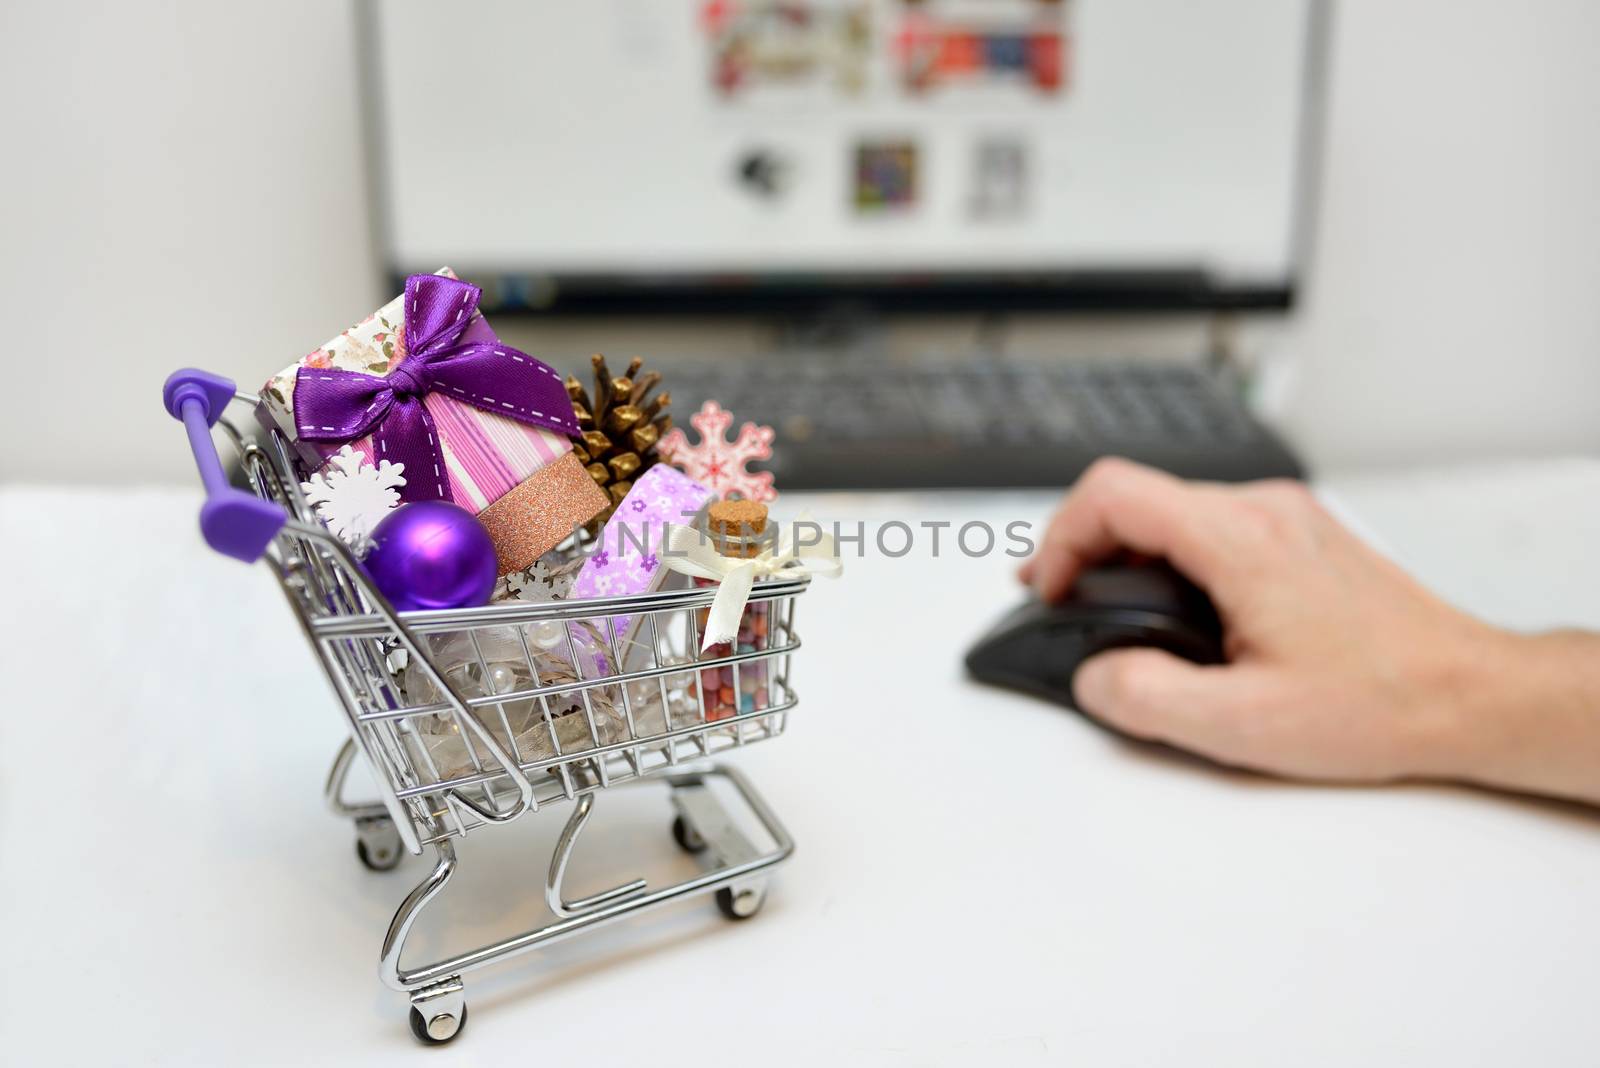 Online Christmas Shopping Cart on desk